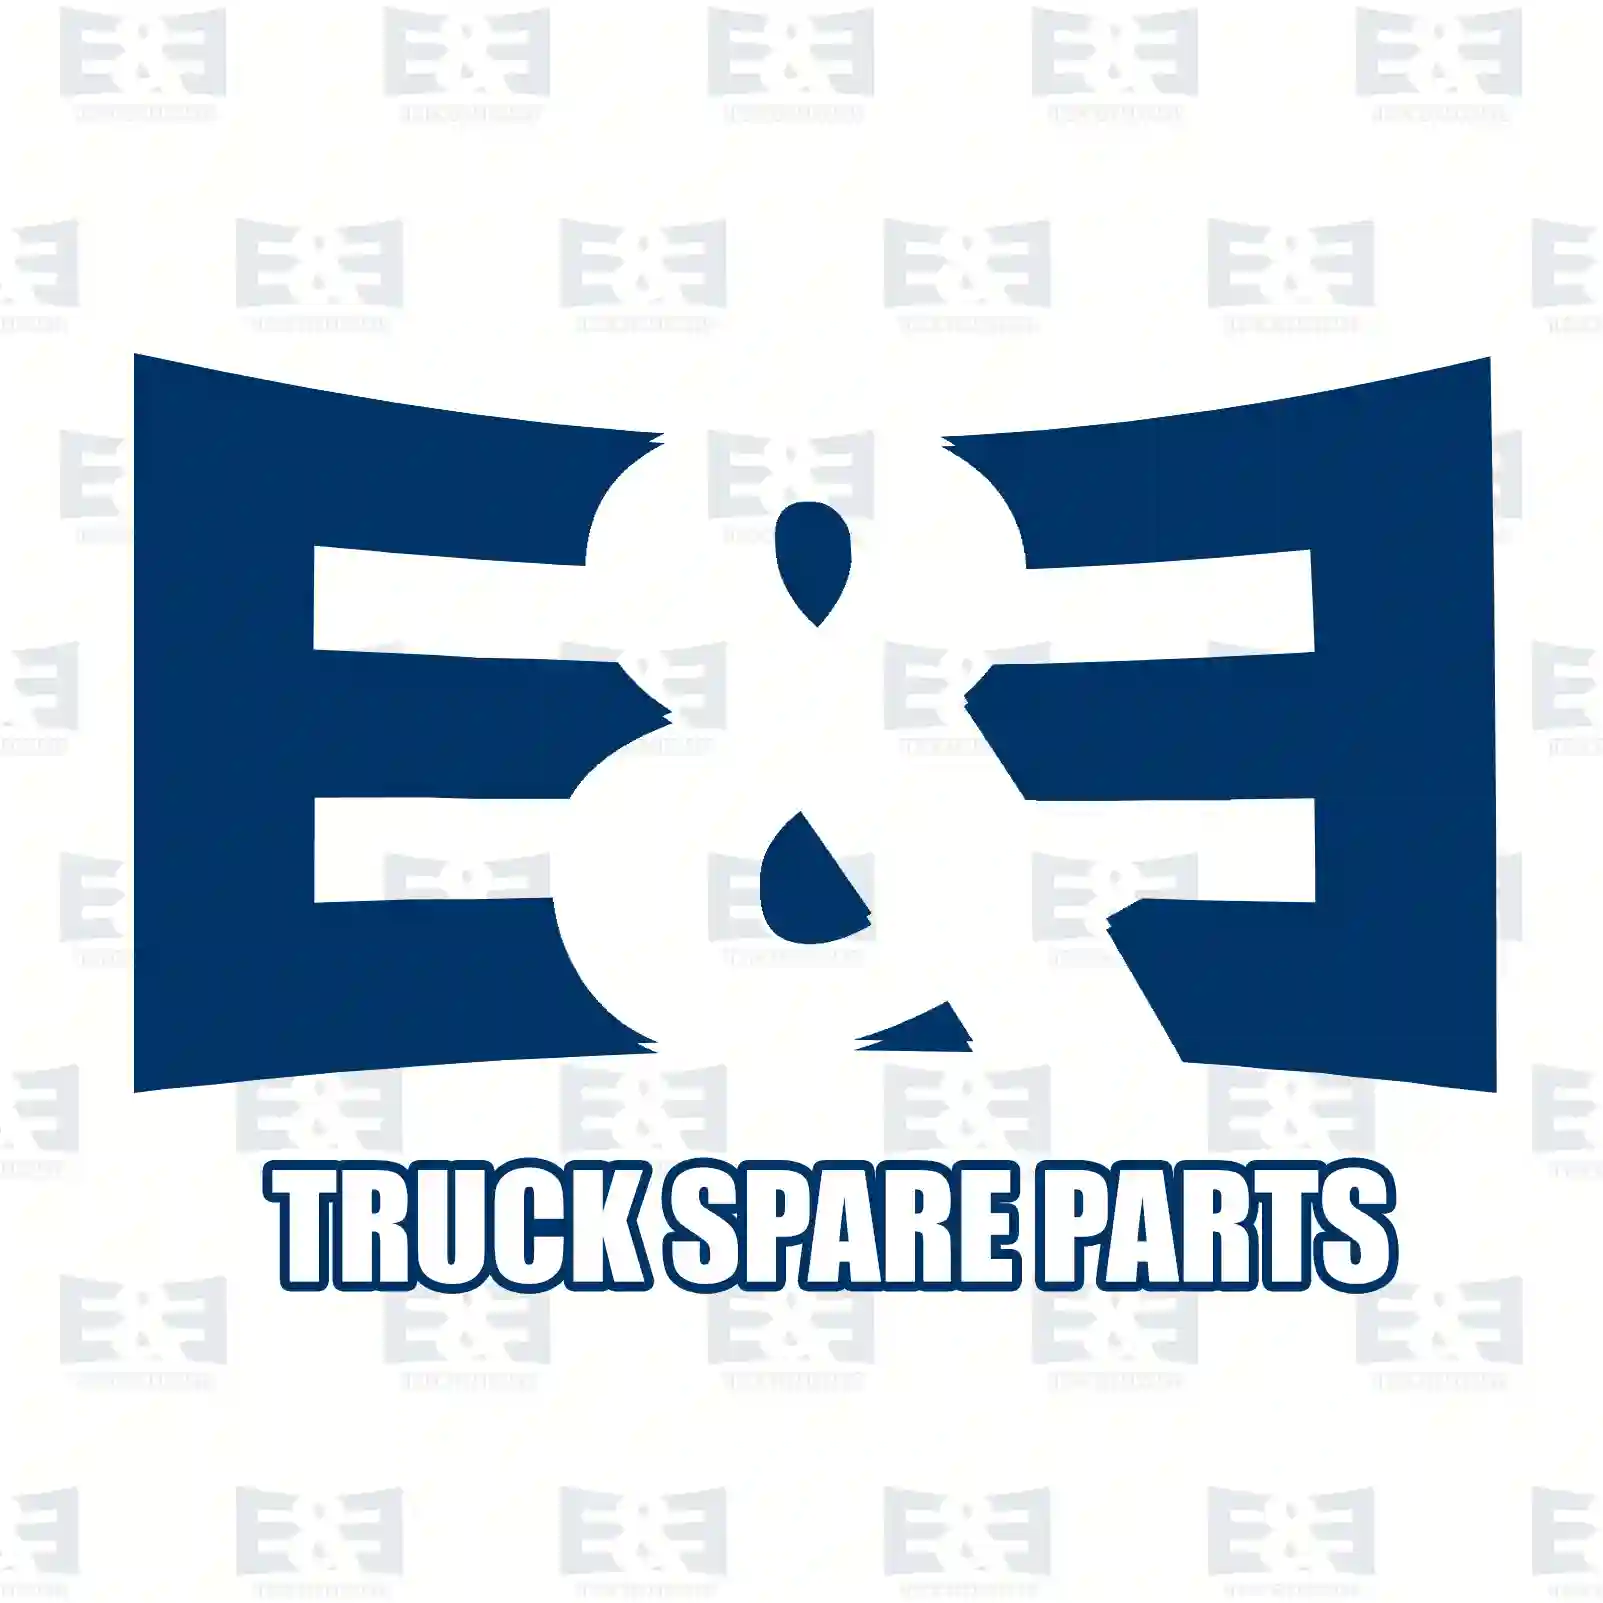 Screw, 2E2285936, 7420765419, 20765419, , ||  2E2285936 E&E Truck Spare Parts | Truck Spare Parts, Auotomotive Spare Parts Screw, 2E2285936, 7420765419, 20765419, , ||  2E2285936 E&E Truck Spare Parts | Truck Spare Parts, Auotomotive Spare Parts